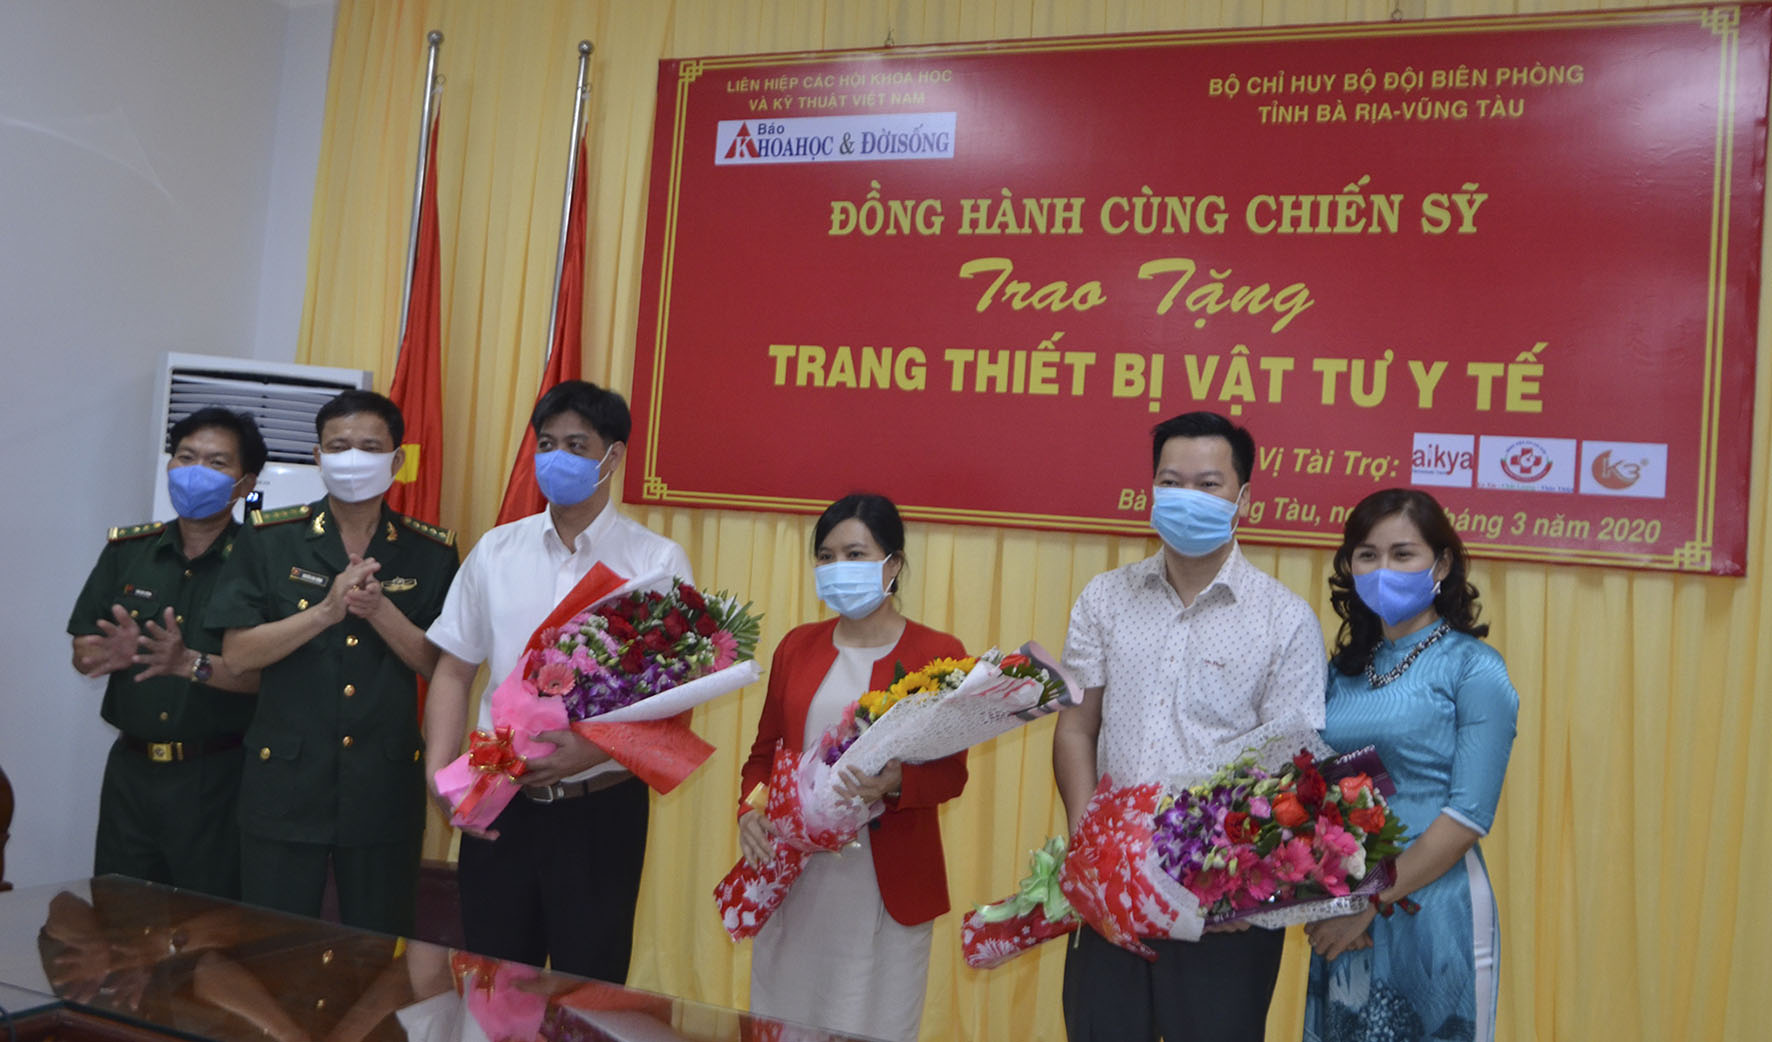 Đại tá Nguyễn Văn Thống, Phó Chính ủy Bộ Chỉ huy Bộ đội Biên phòng tỉnh (thứ 2 từ trái qua) tặng hoa các nhà tài trợ.